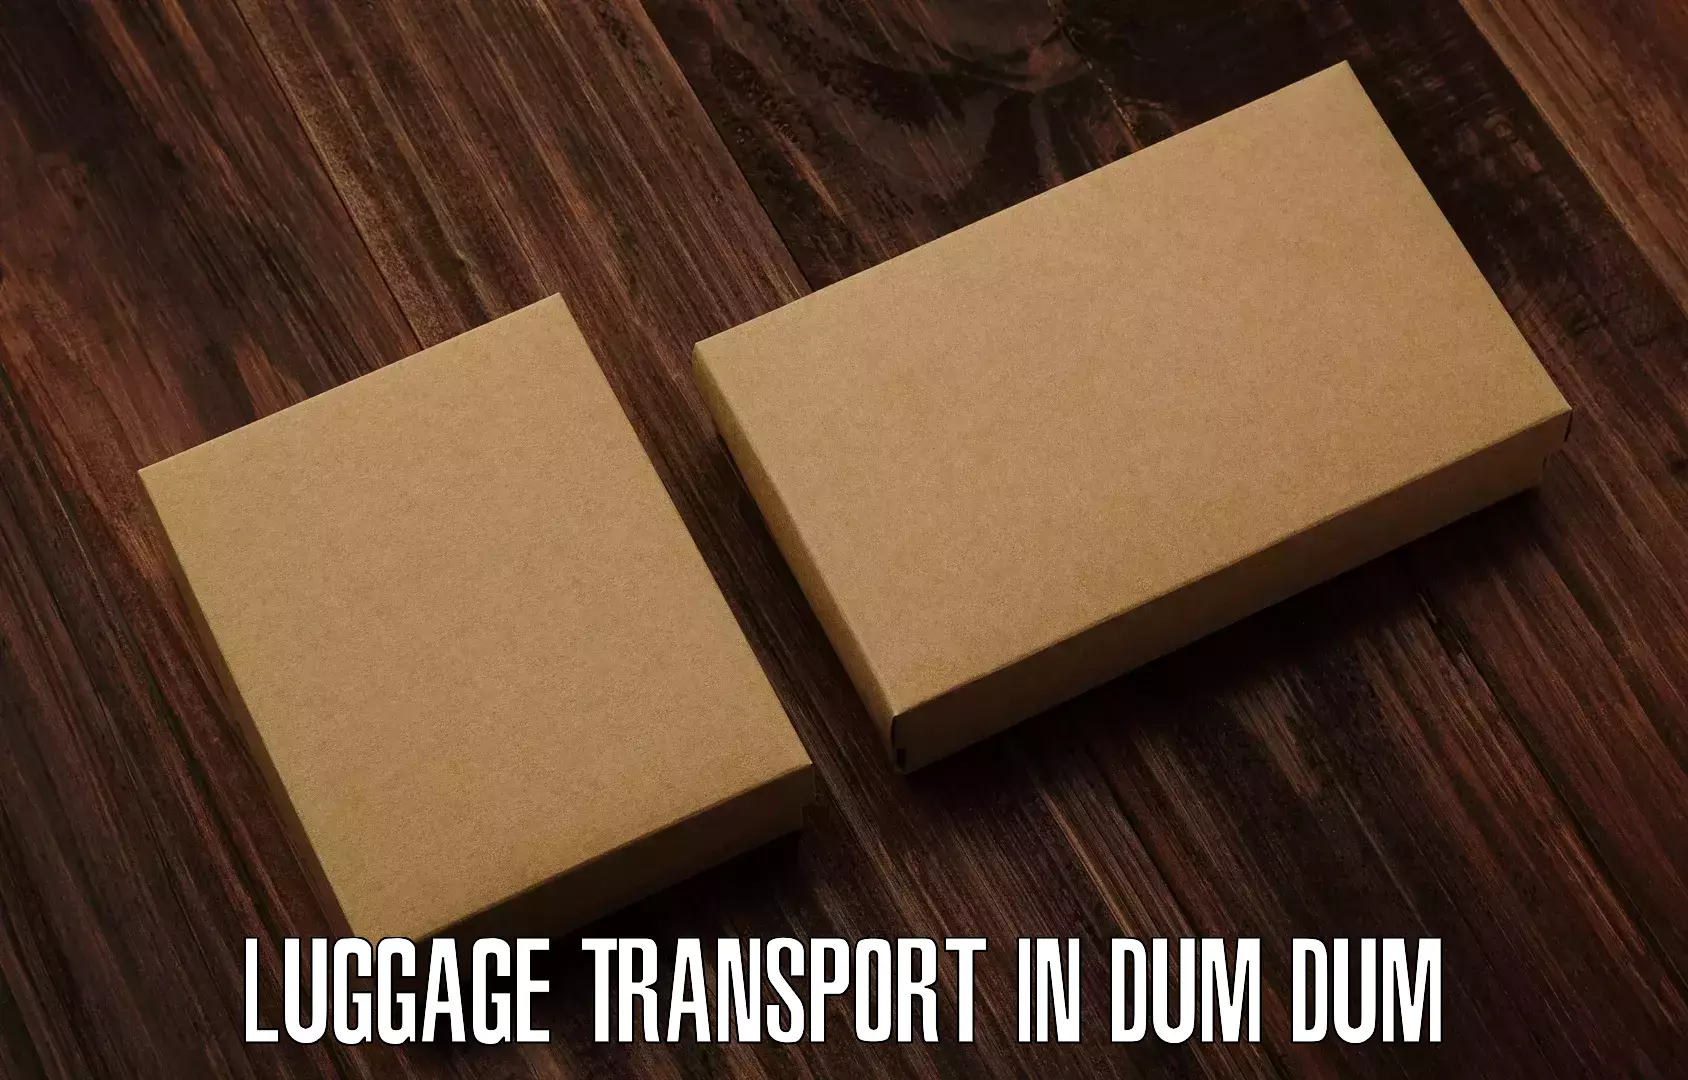 Single item baggage courier in Dum Dum